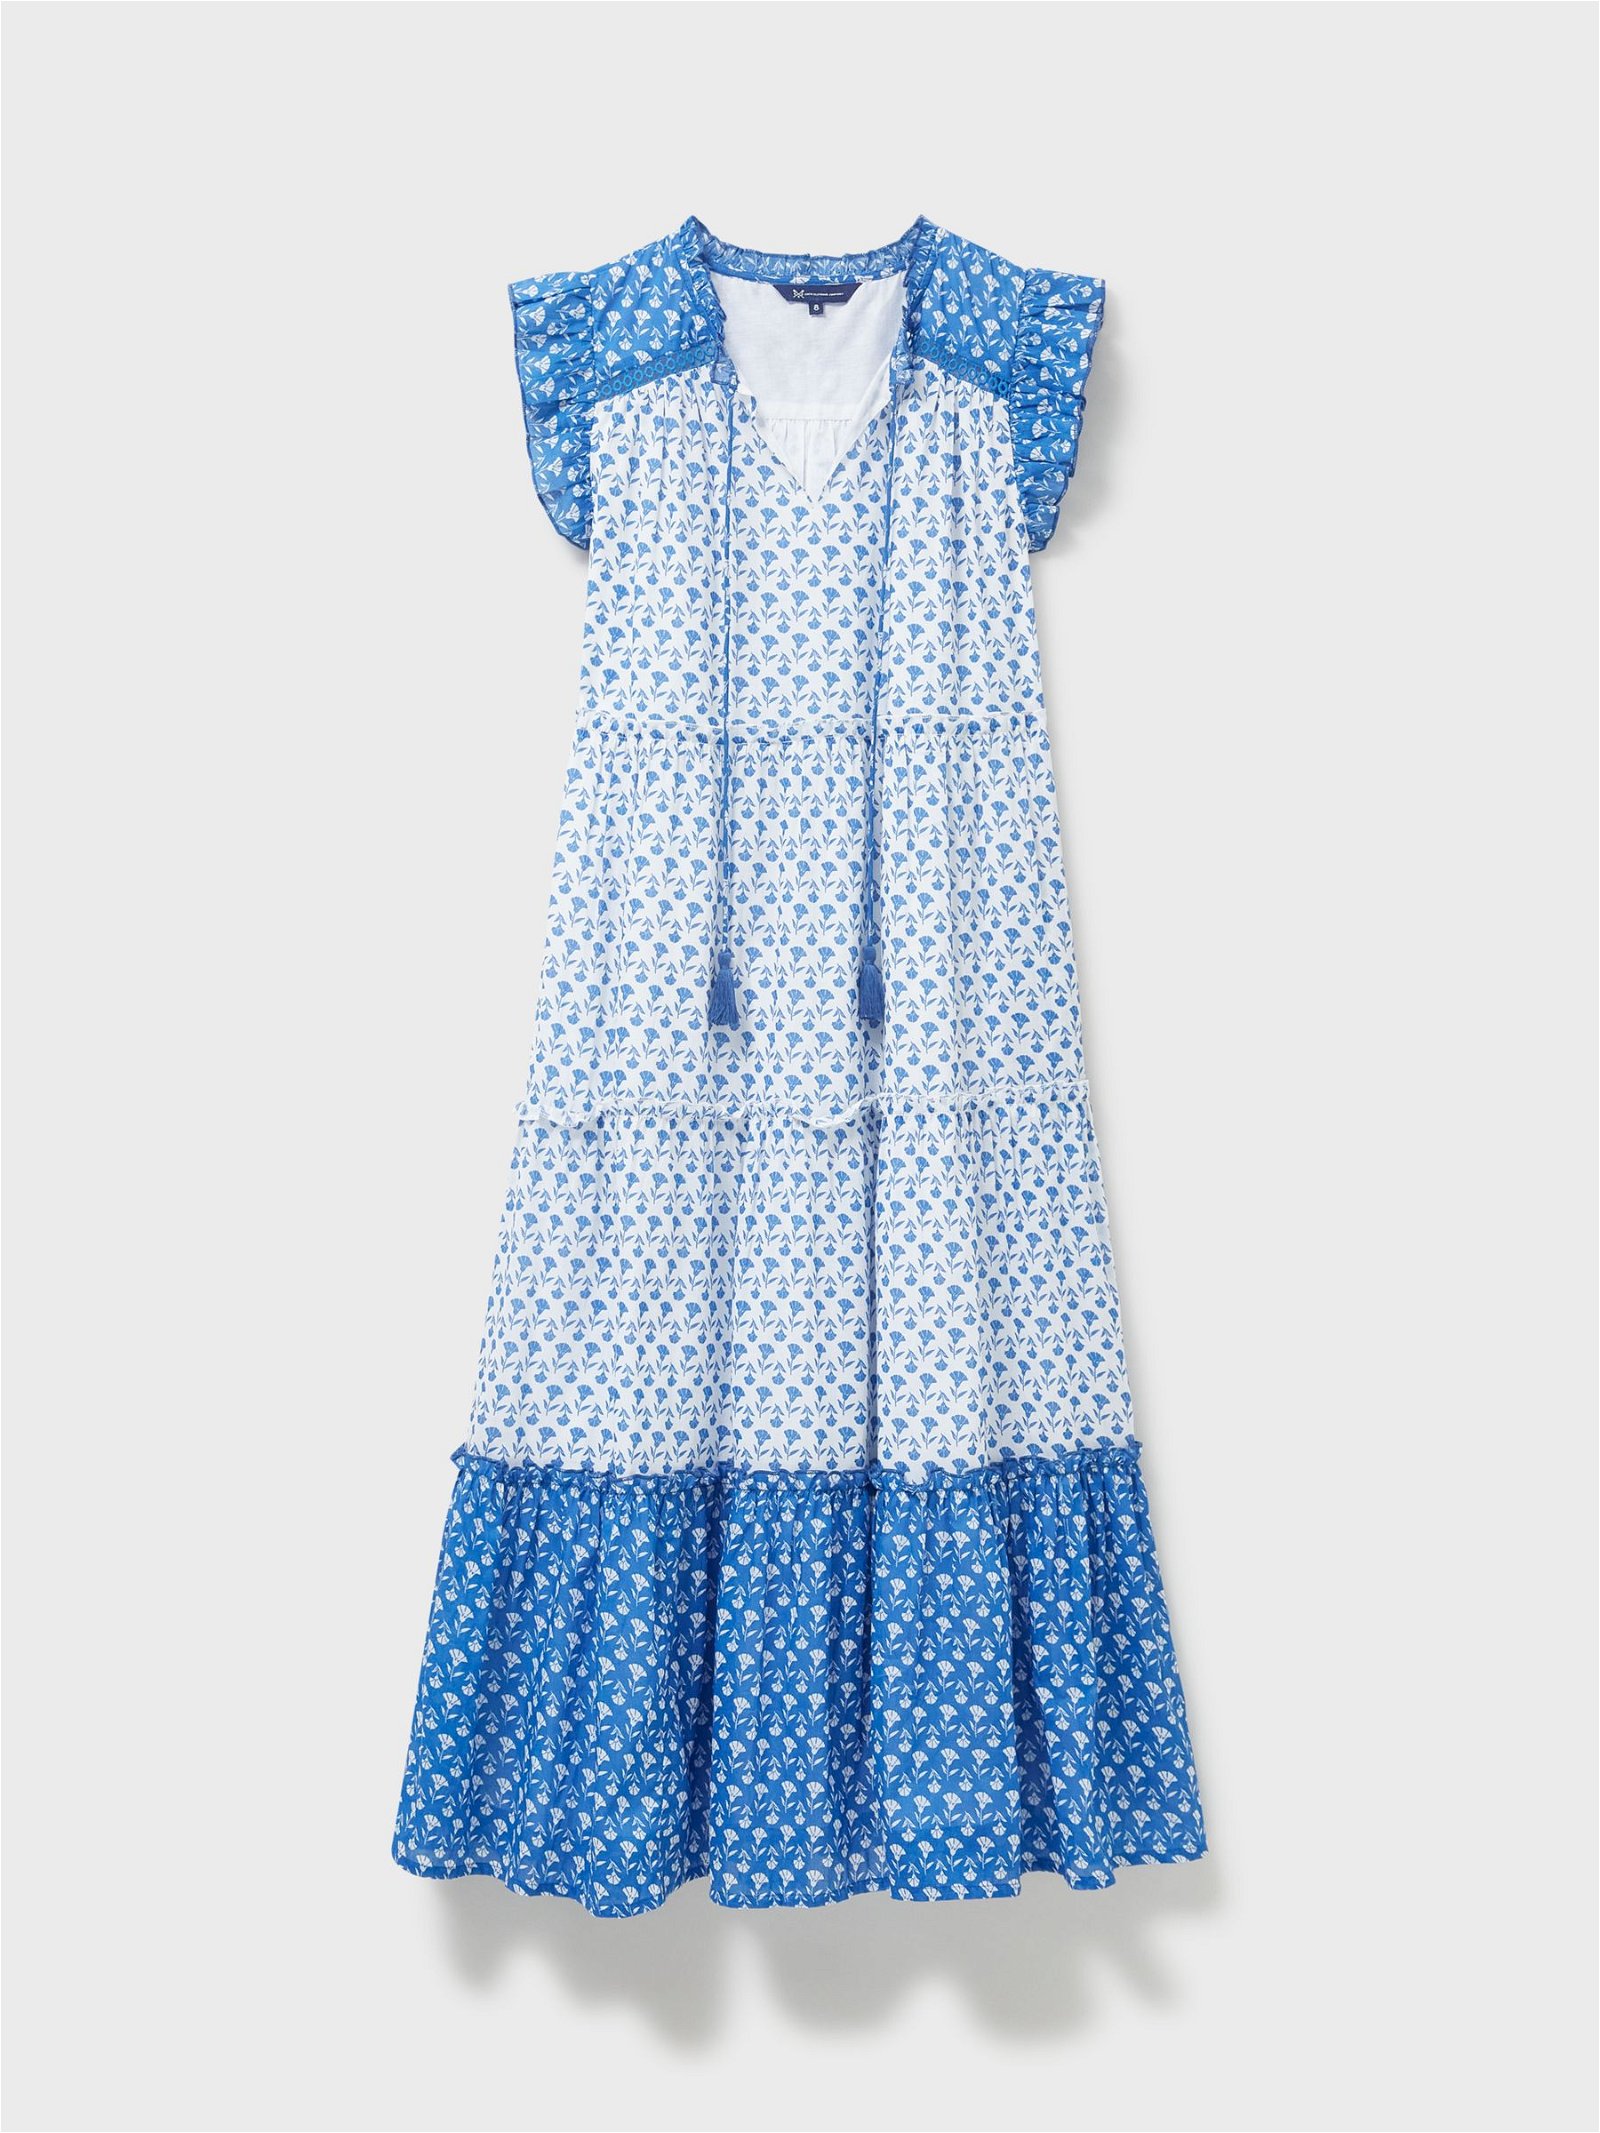 R&K Originals Color Block Floral Multi Color Blue Casual Dress Size 16  (Plus) - 28% off